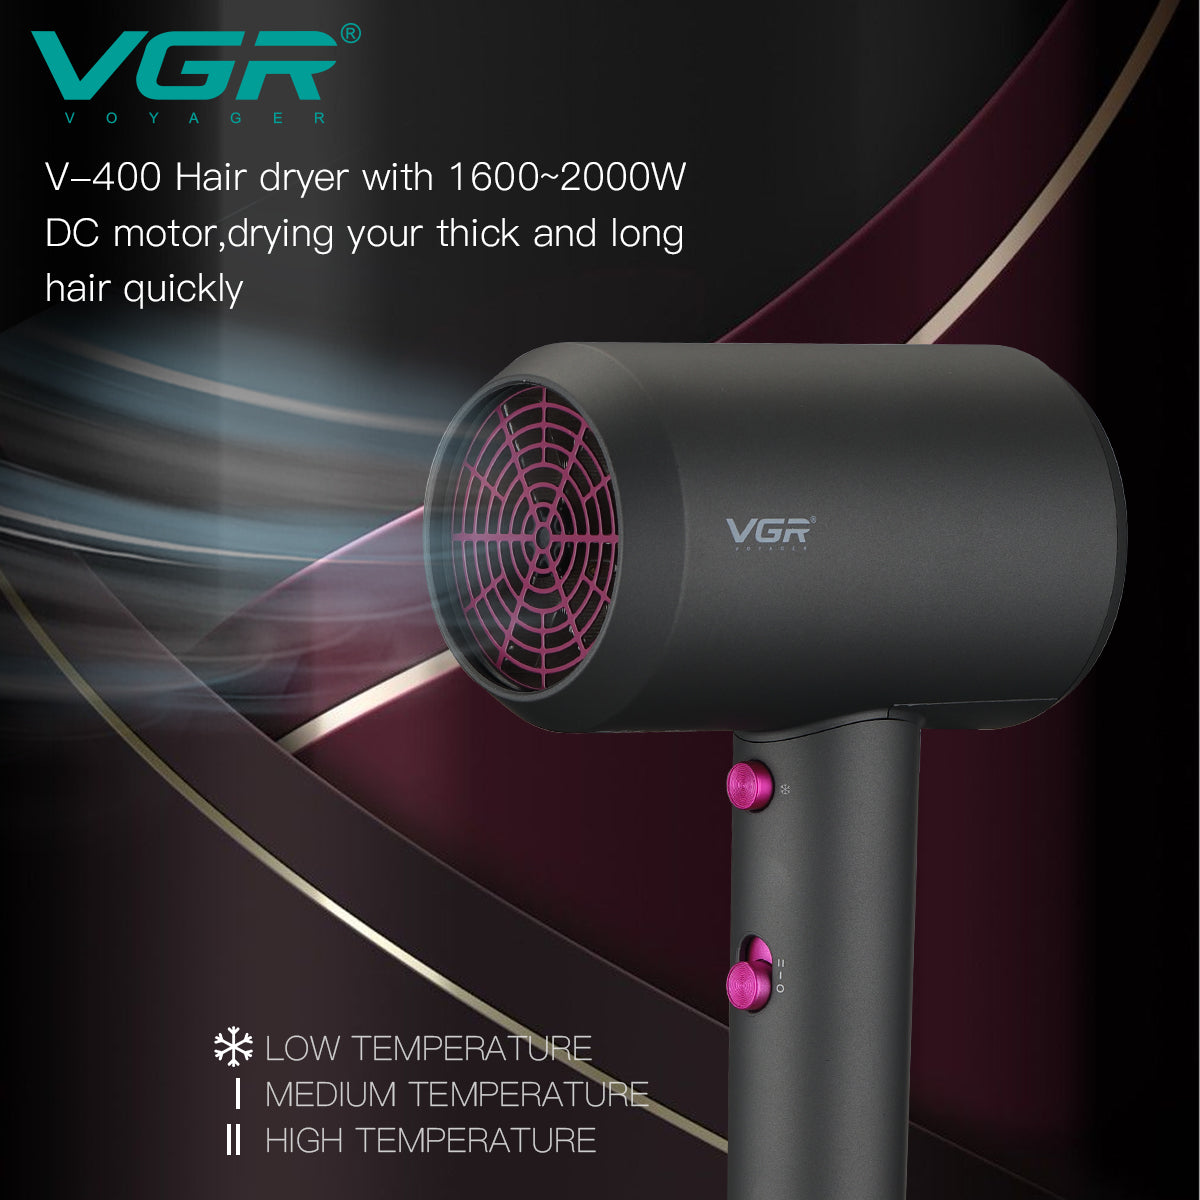 VGR, VGRindia, VGRofficial, VGR V-400